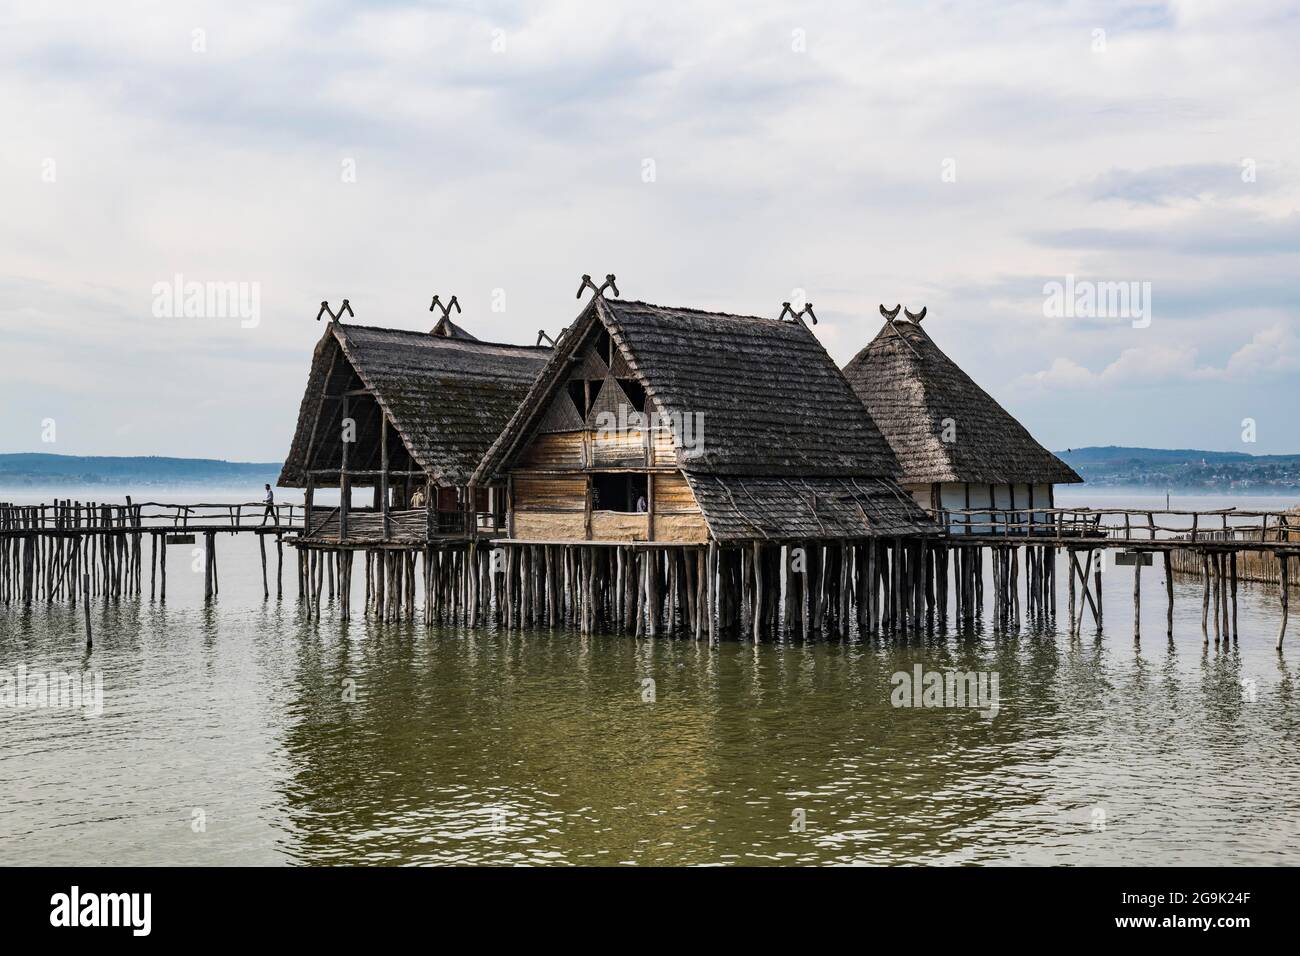 Patrimoine mondial de l'UNESCO le musée archéologique en plein air abrite des maisons en pilotis, sur le lac de Constance, Unteruhldingen, Allemagne Banque D'Images